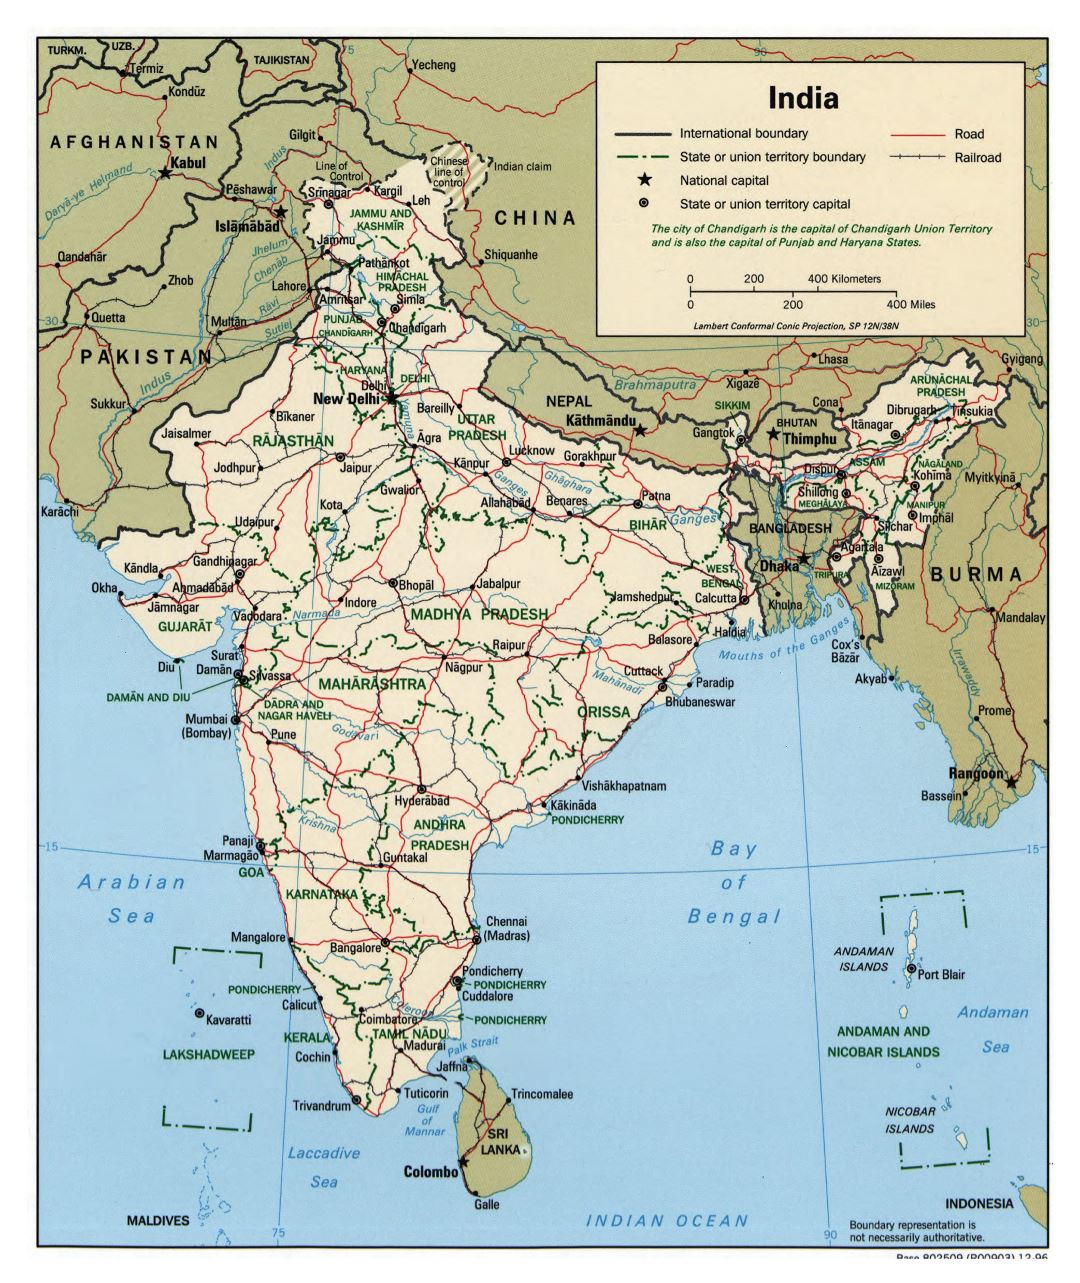 Grande detallado mapa político y administrativo de la India con carreteras, ferrocarriles y ciudades - 1996